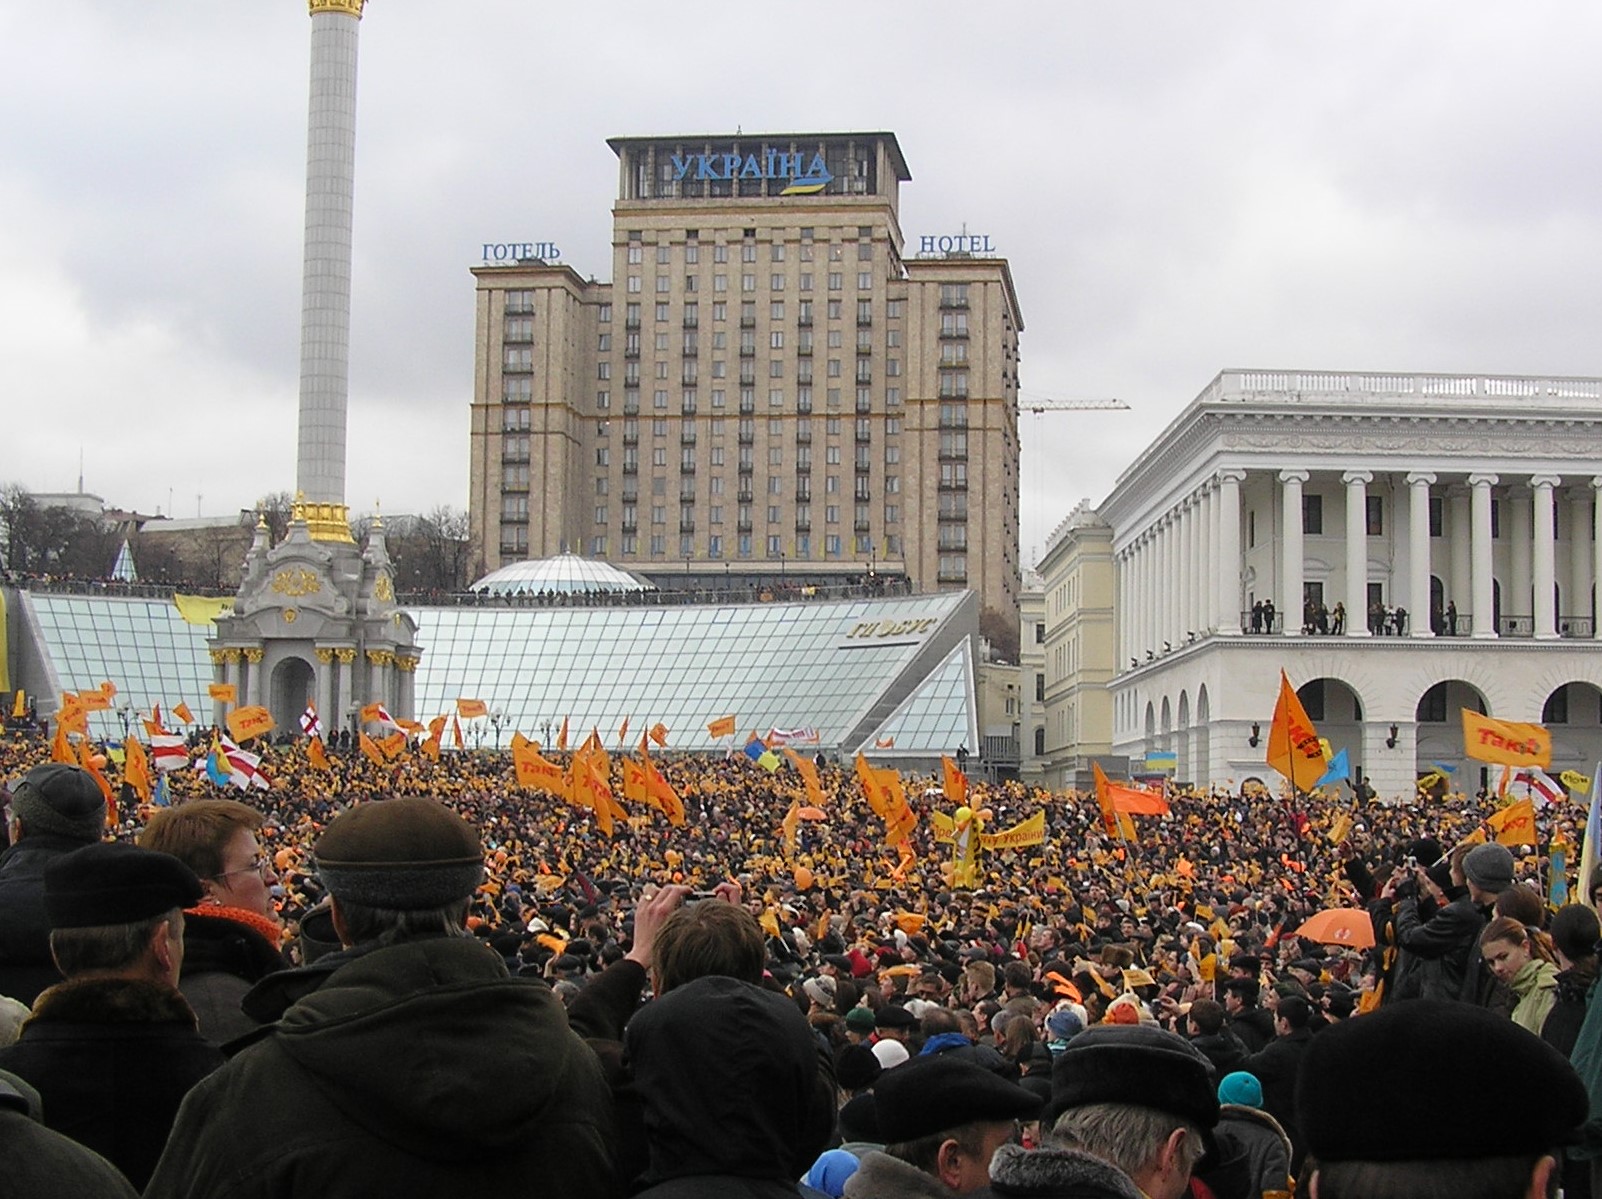 Demonstrierende während der Orangenen Revolution in der Ukraine auf dem Majdan, dem Zentrum des politischen Protestes - Foto © Irpen unter CC BY-SA 3.0